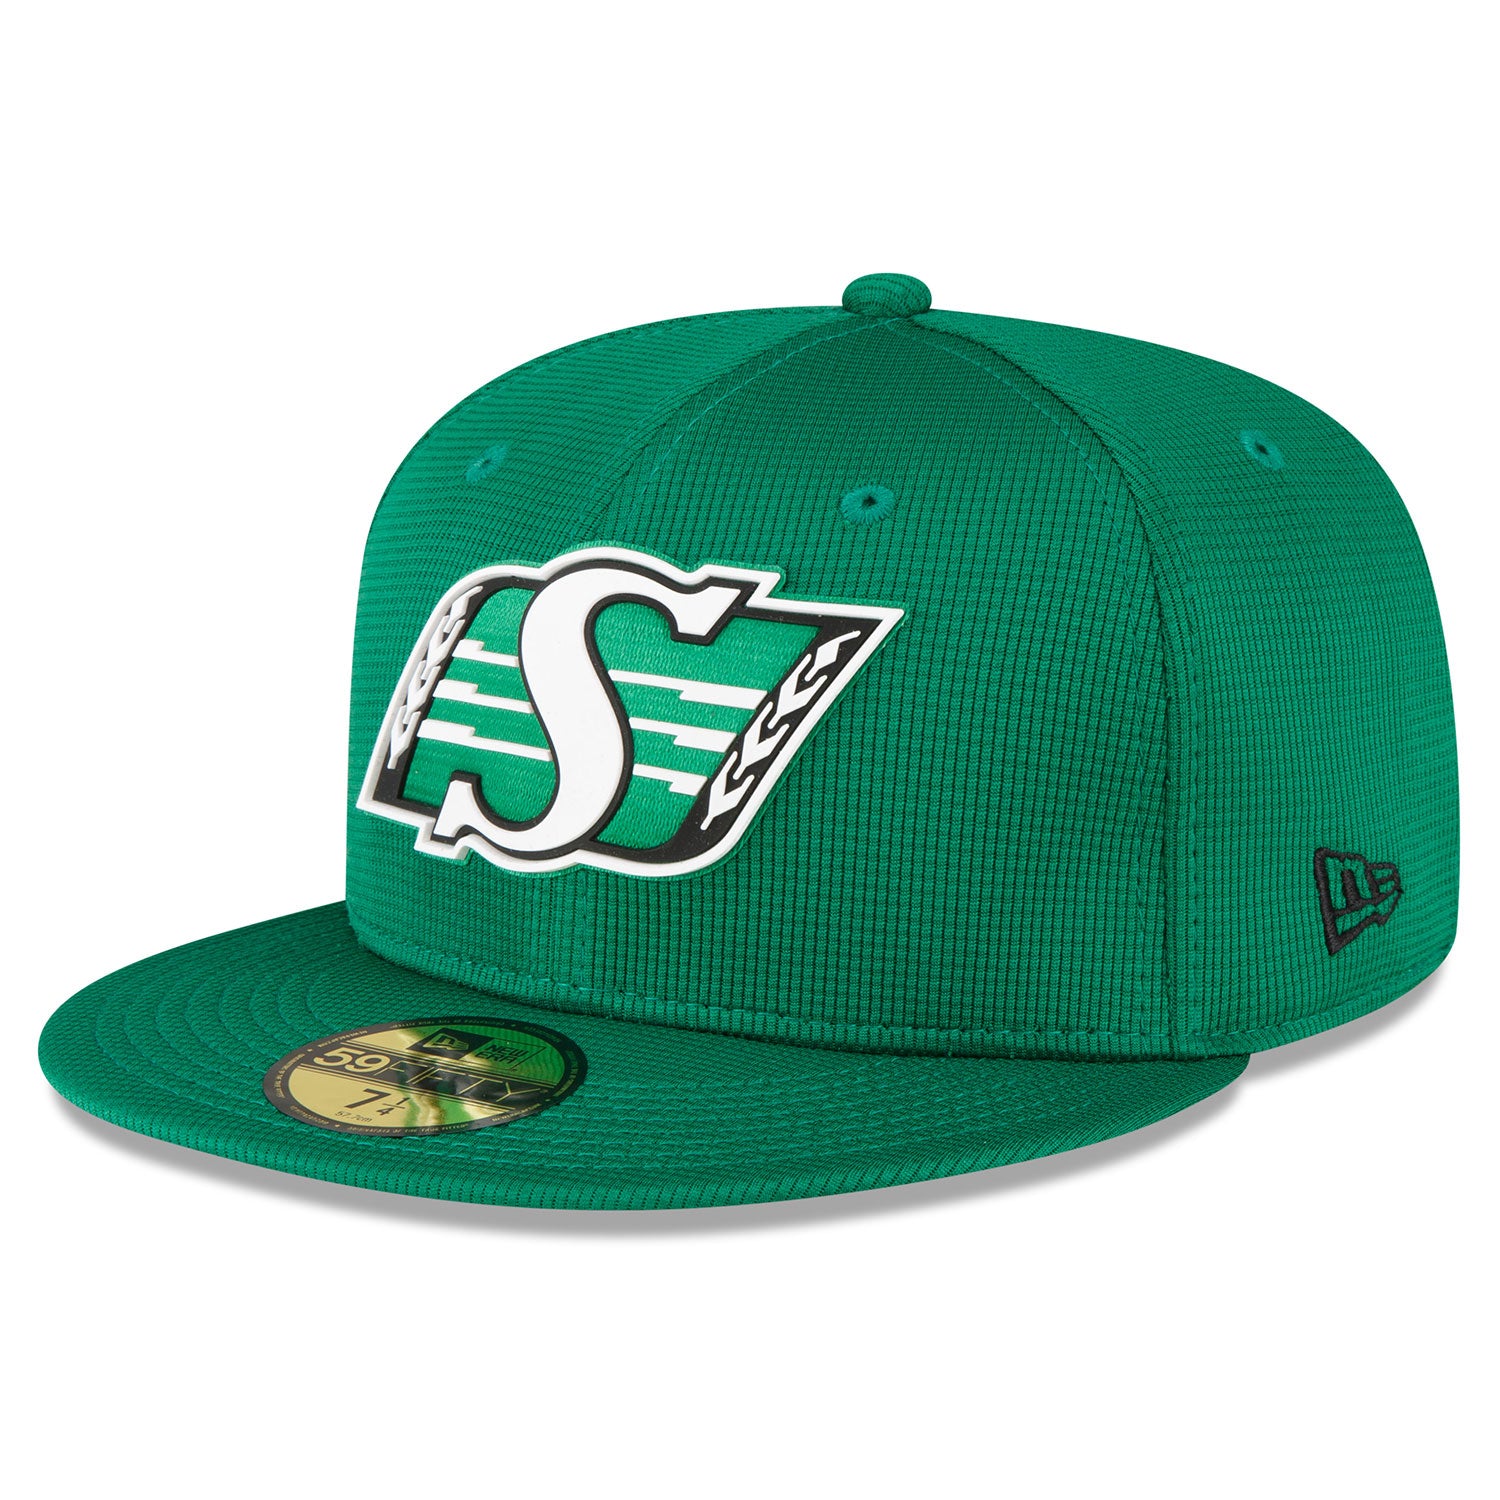 Sideline 5950 Green Cap